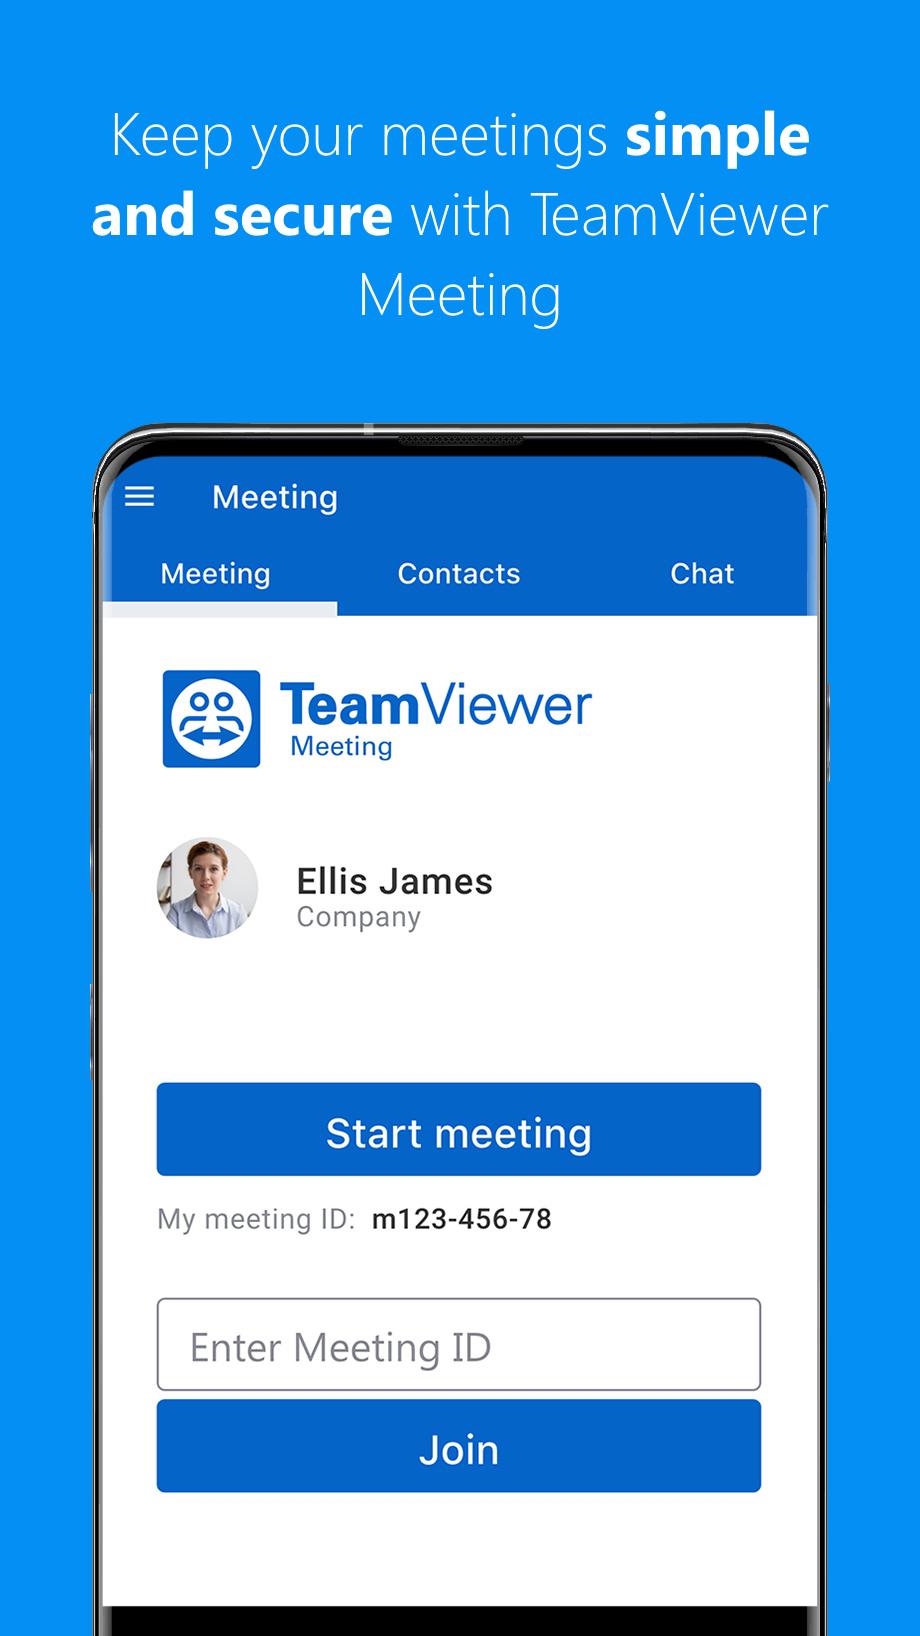 teamviewer for meetings